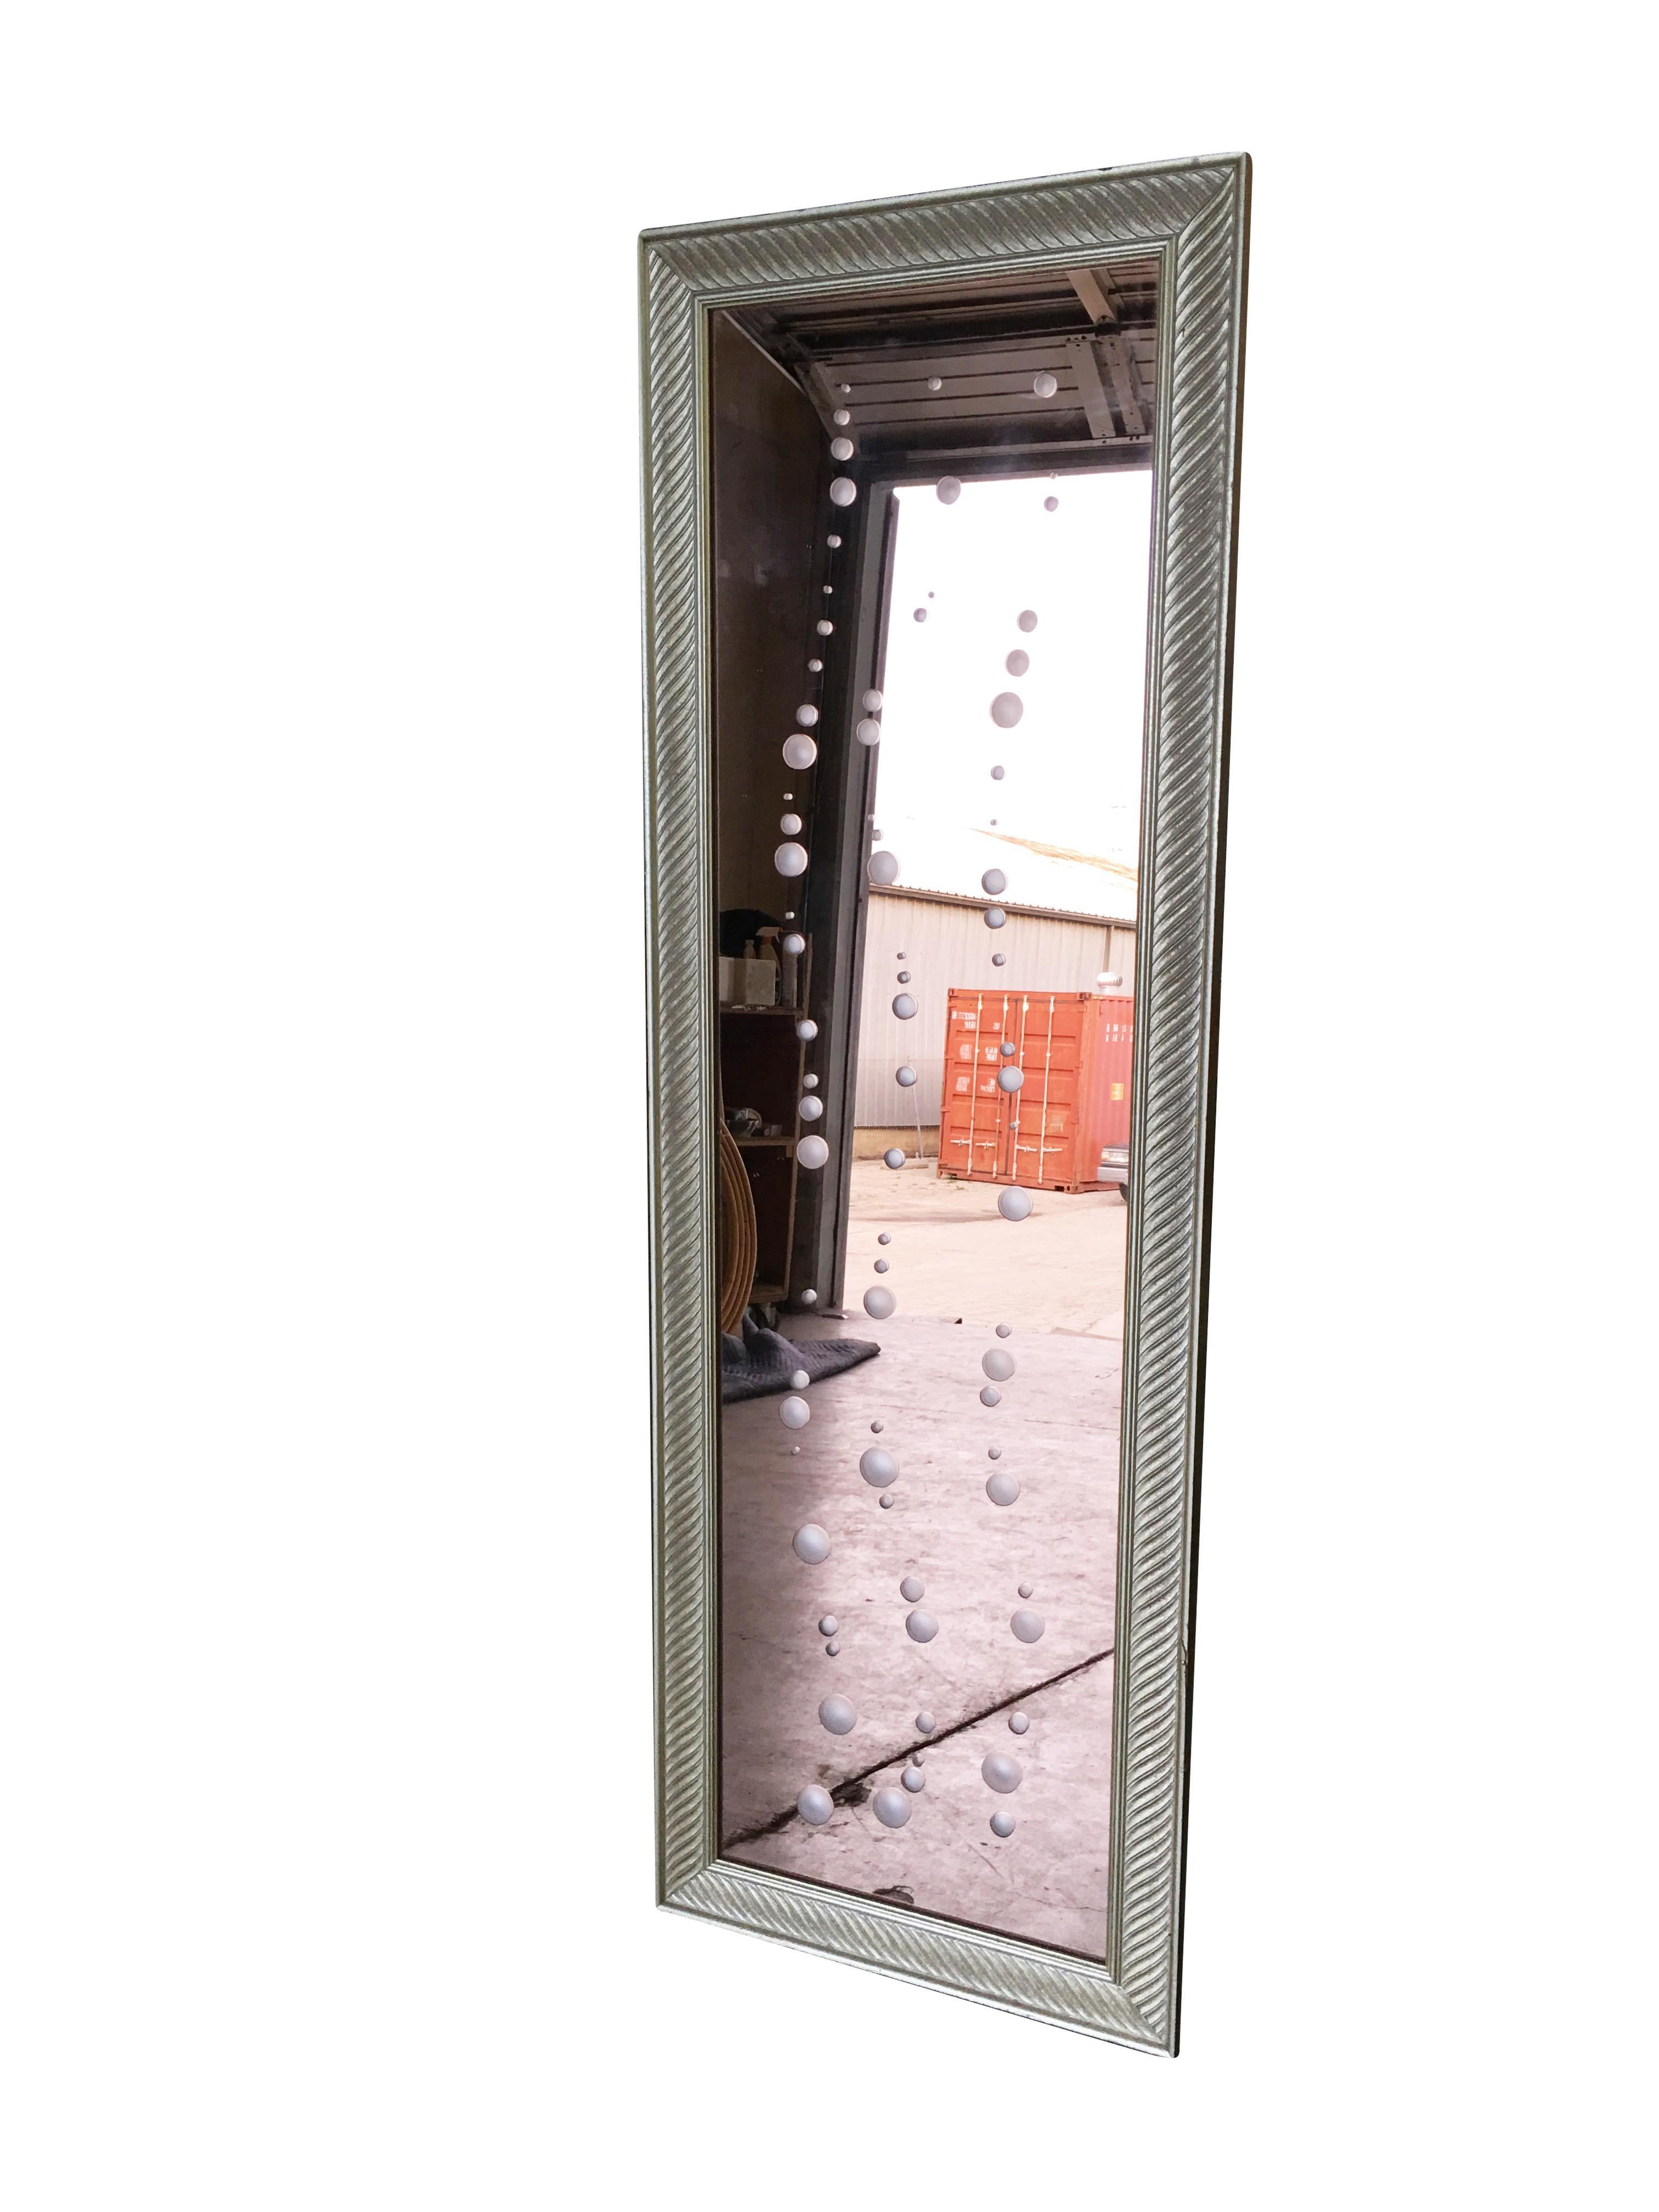 Vintage 1960s Regency Style Peach Glass Floor Mirror mit geschnitzten Blasen entlang der Oberfläche des Spiegels.

Abmessungen: 42